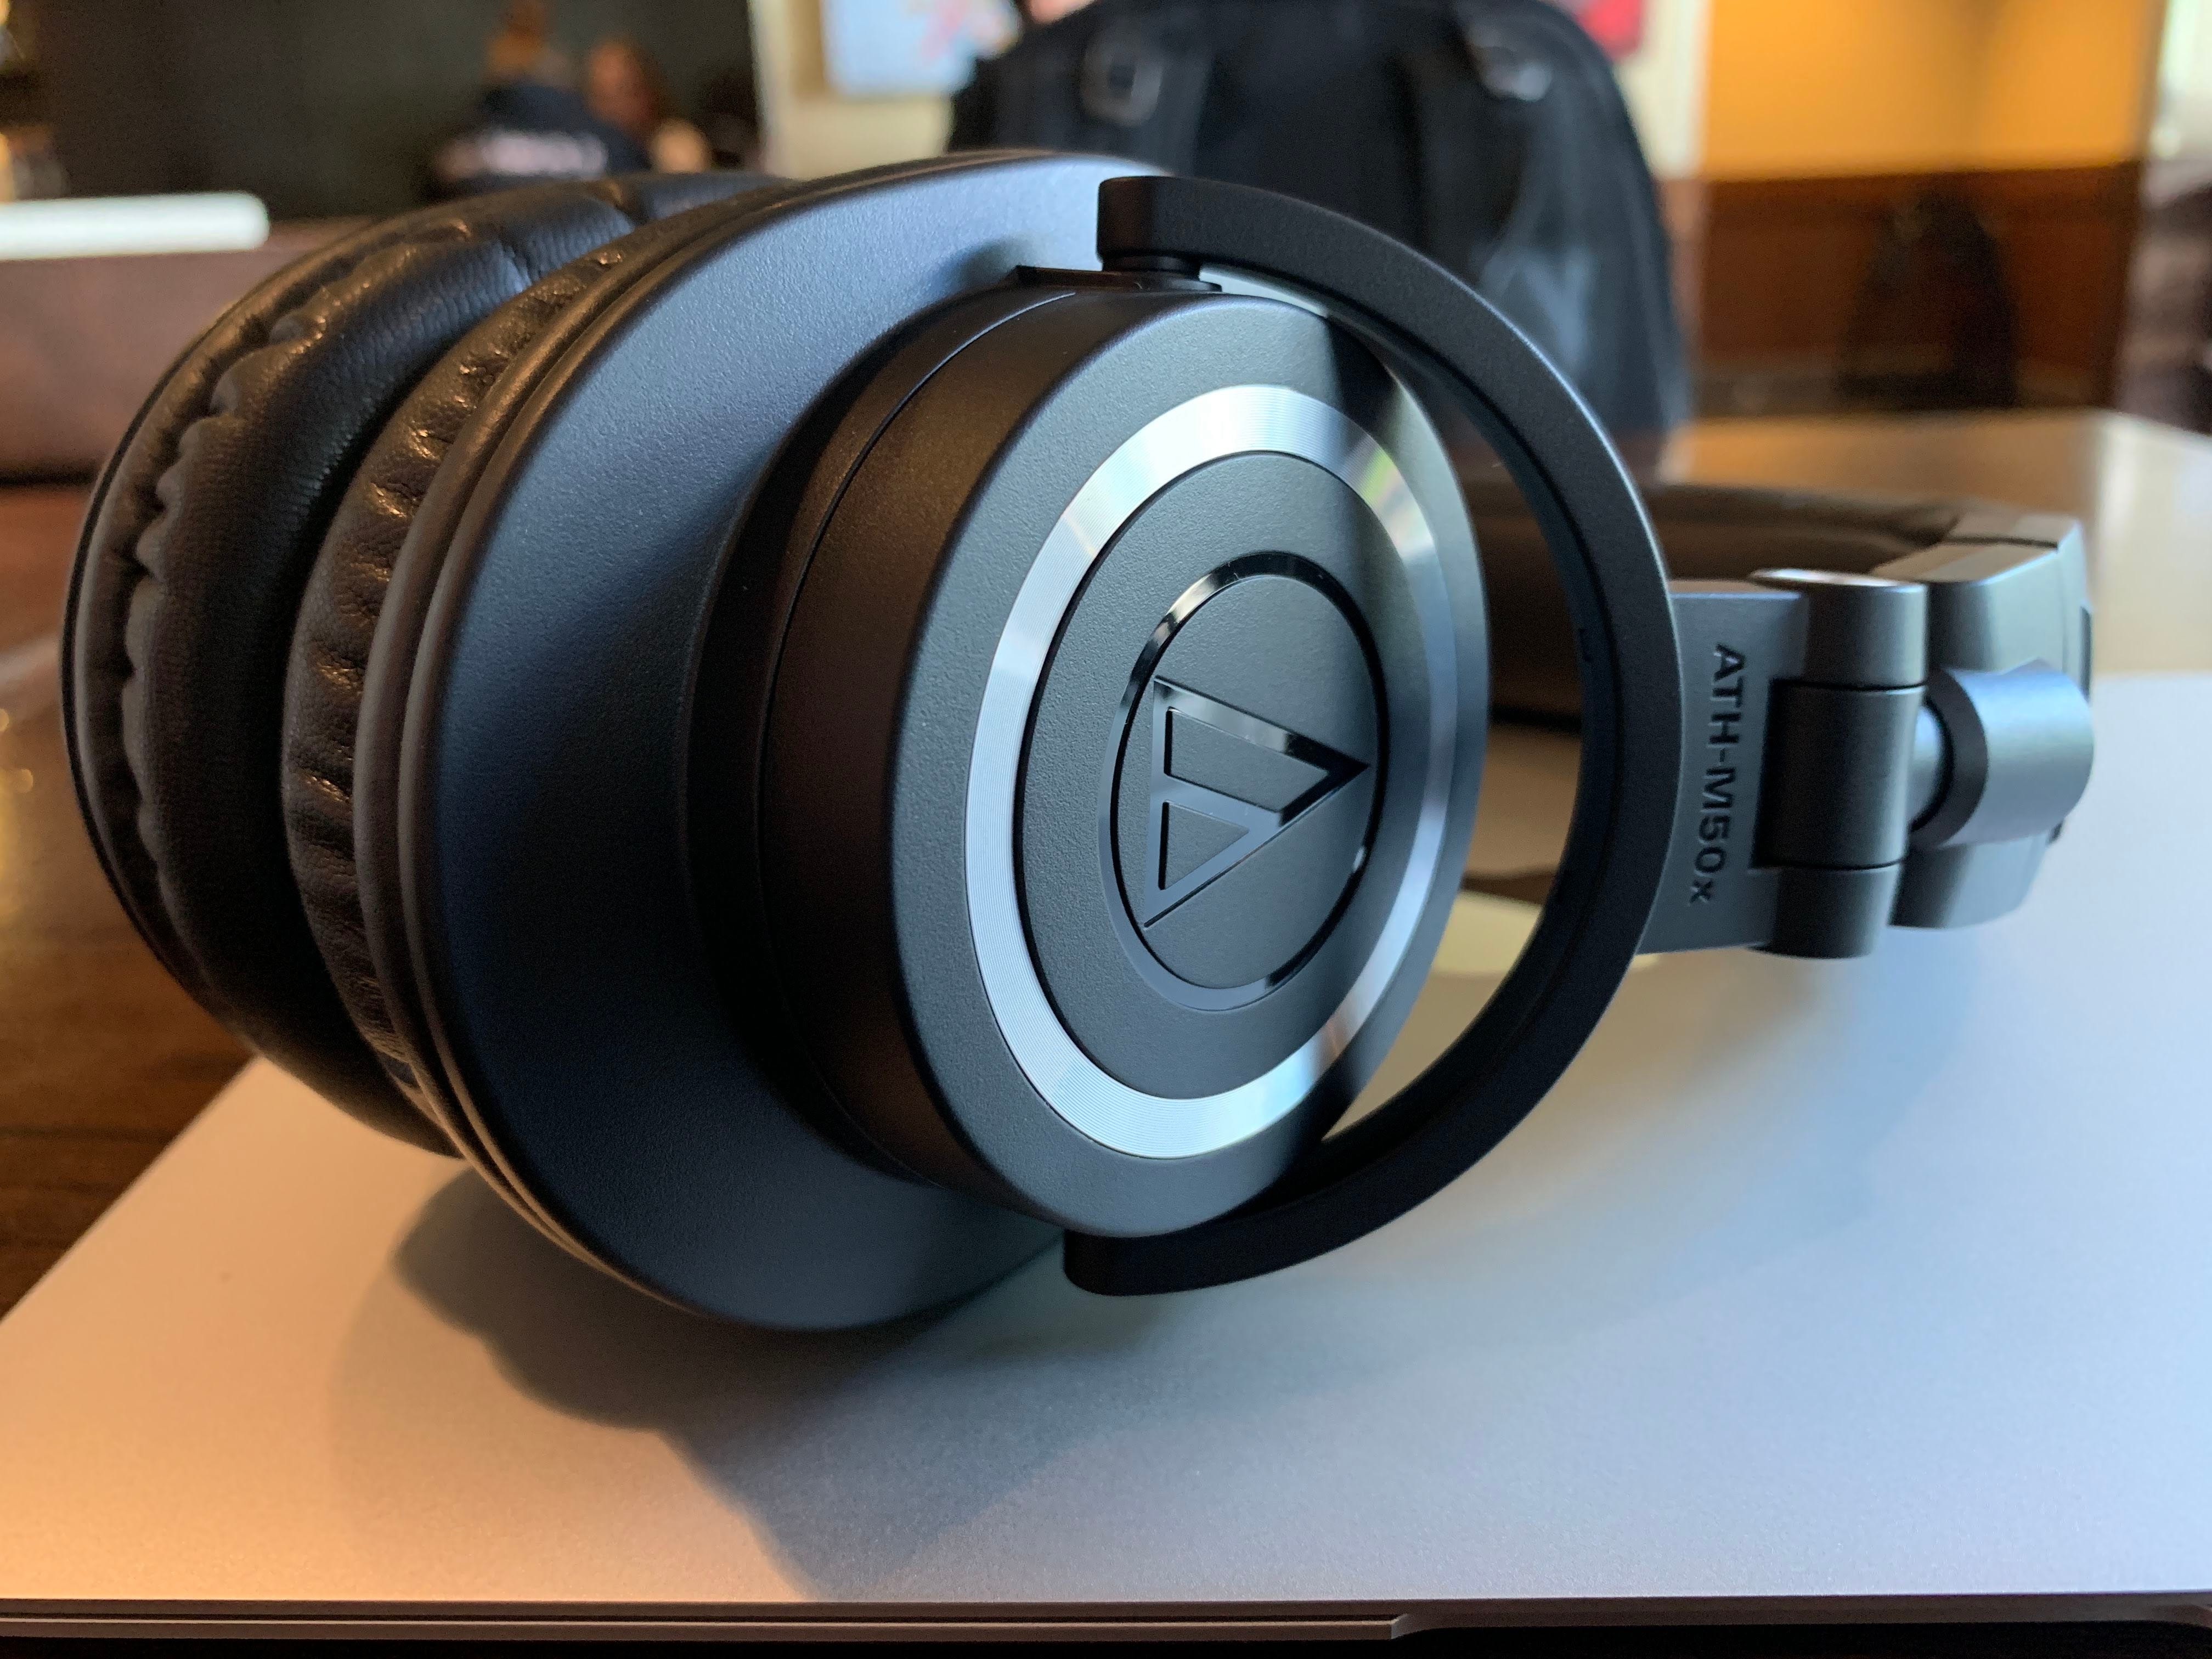 studio quality wireless headphones